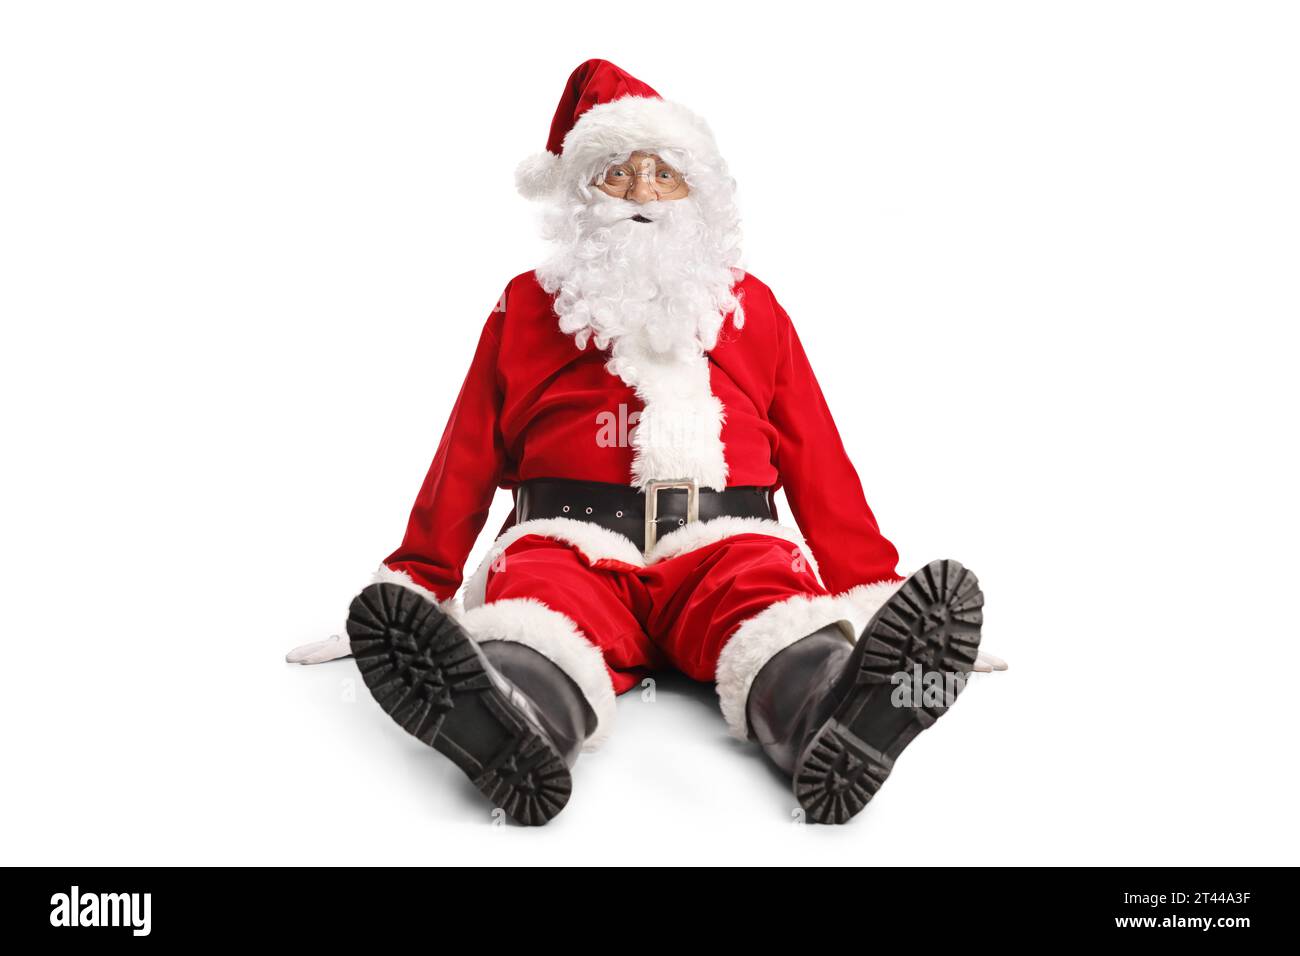 Divertente Babbo Natale seduto a terra e guardando la fotocamera isolata su sfondo bianco Foto Stock